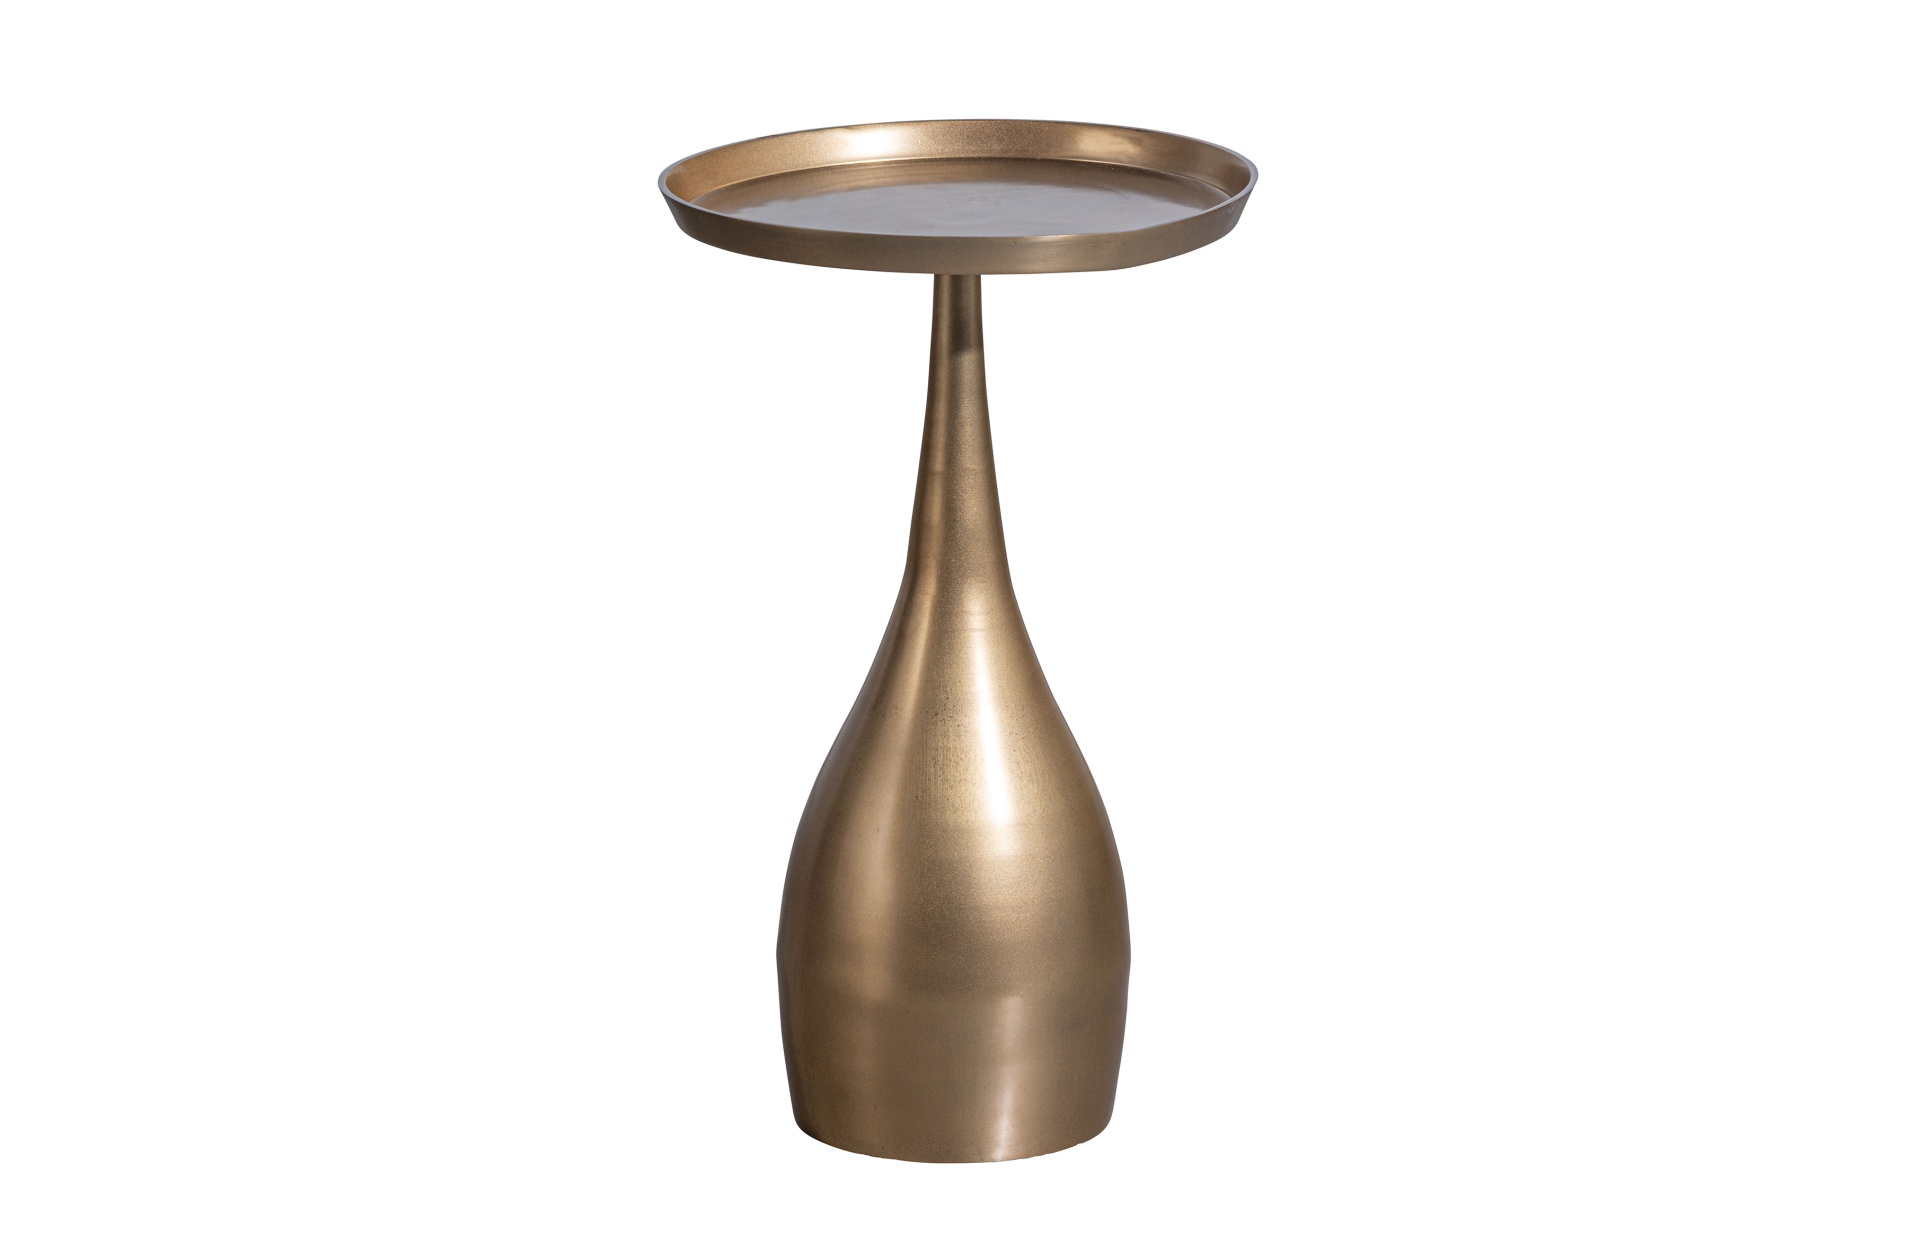 Der Beistelltisch Cone überzeugt mit seinem modernem Design. Gefertigt wurde der Tisch aus Metall, welches einen Antique Farbton besitzt.